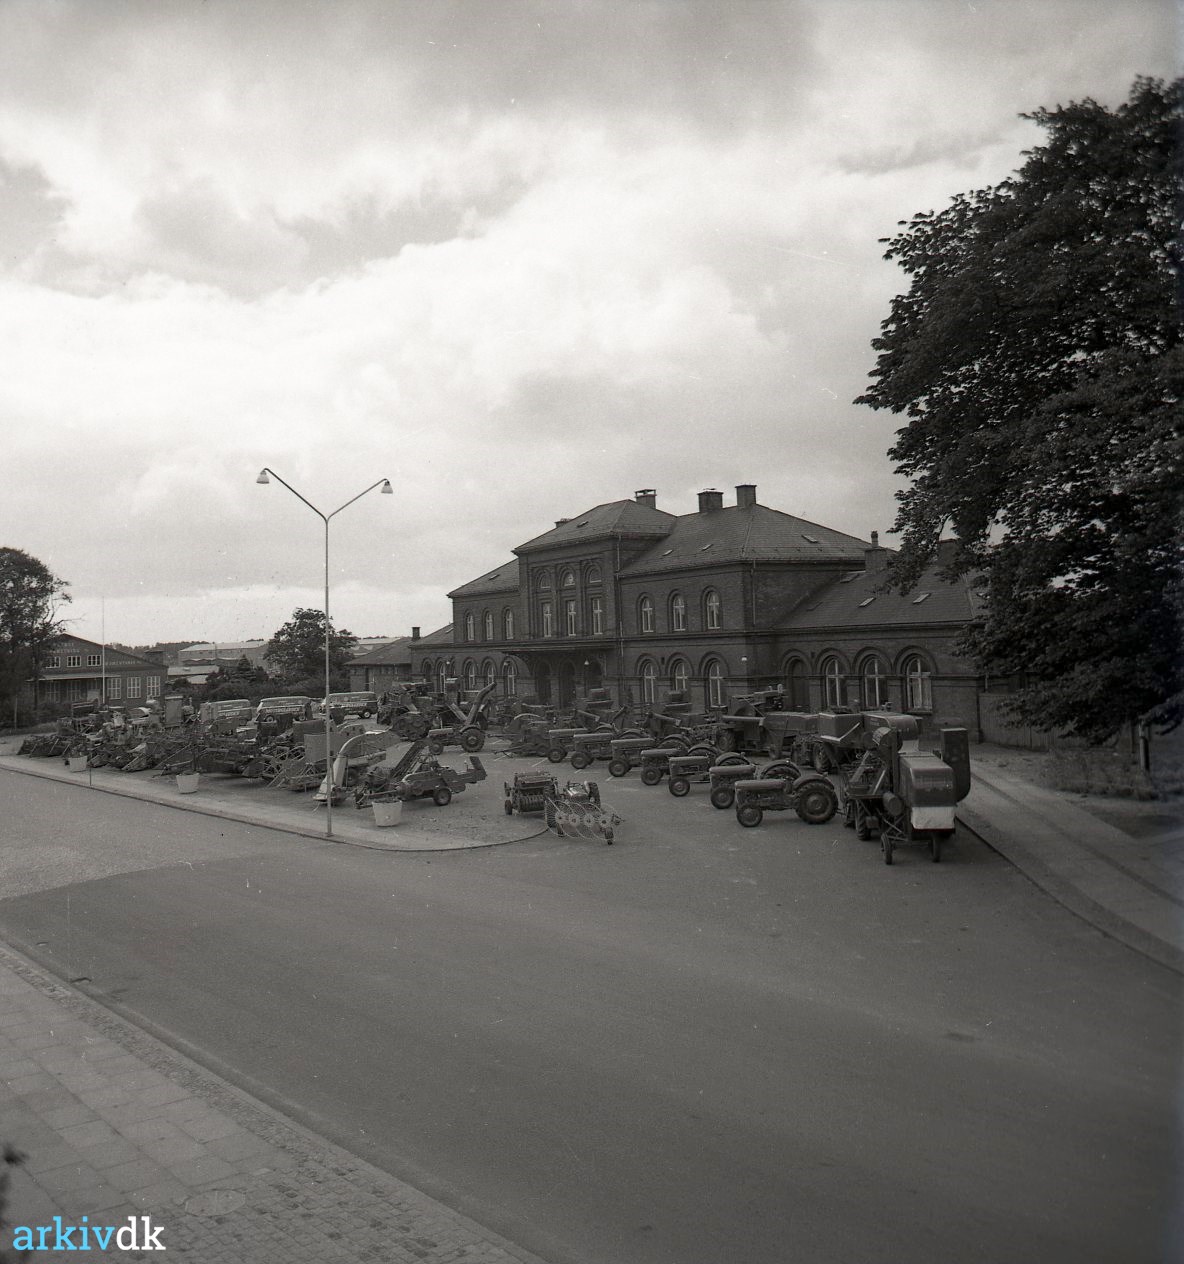 arkiv.dk | Skive gamle Banegård, Viborgvej ca. 1960